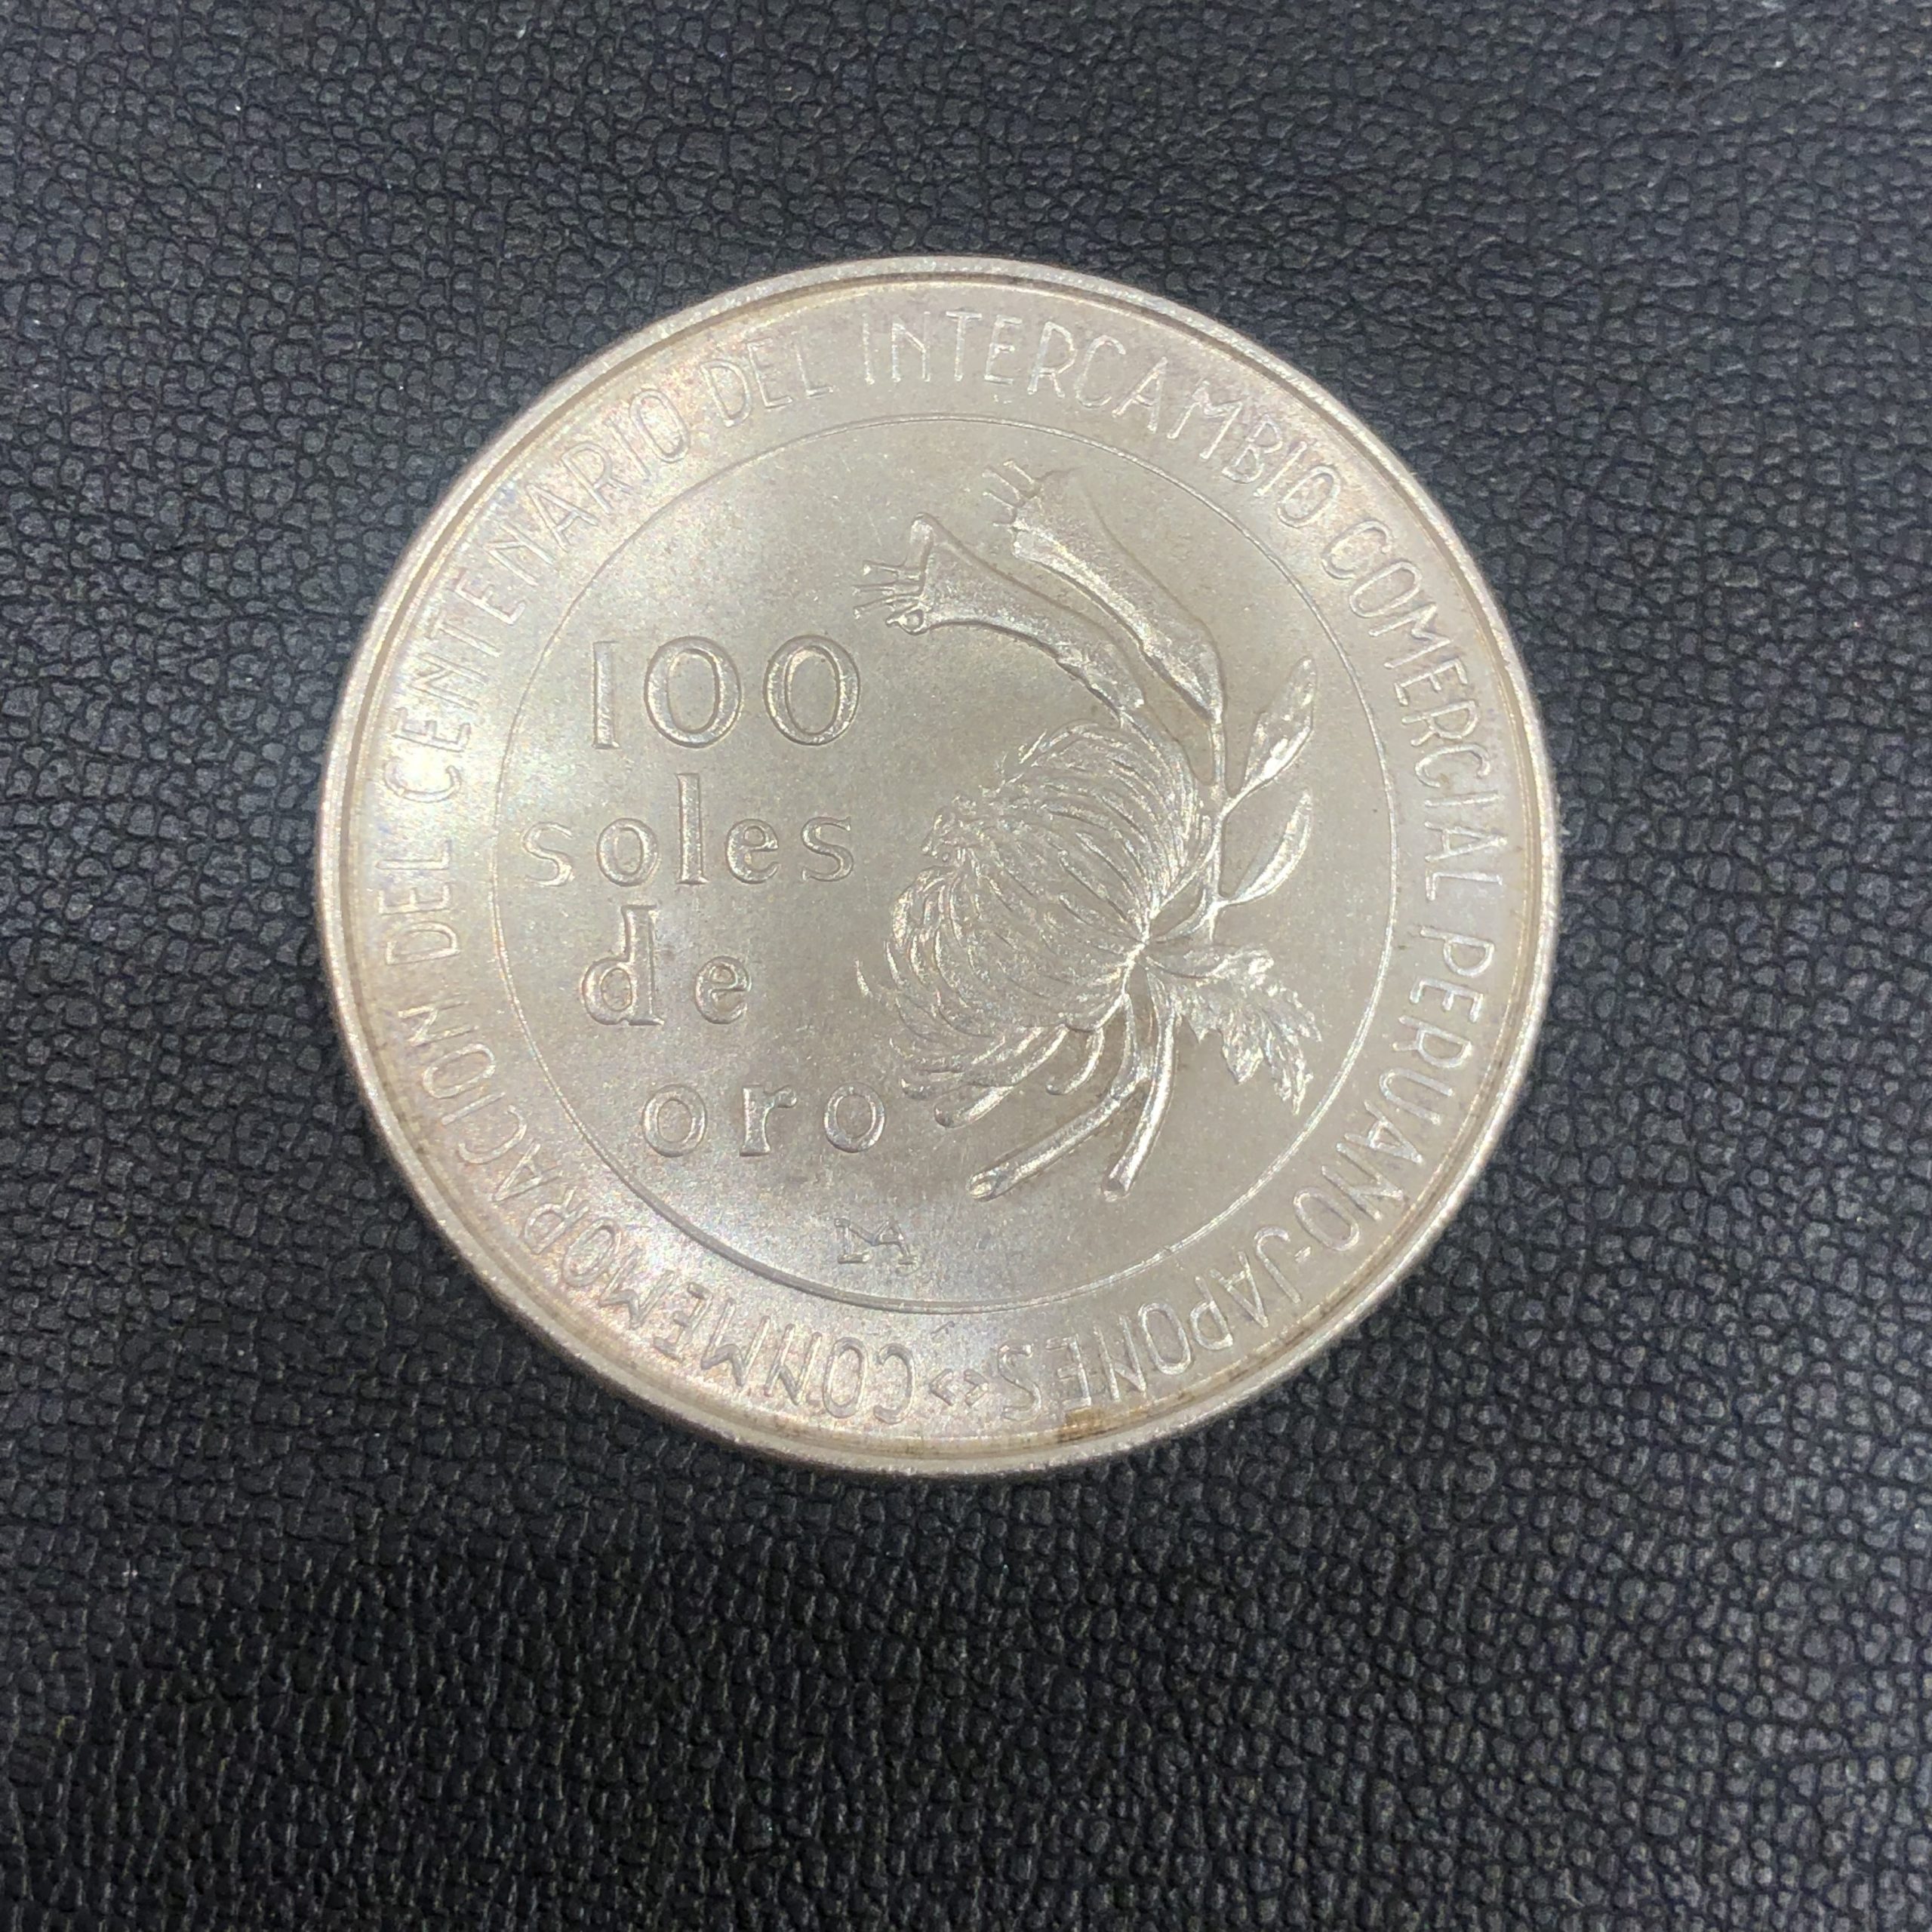 【外国銭】日本ペルー修好100周年記念 1873-1973年 100ソル 銀貨 100soles de oro